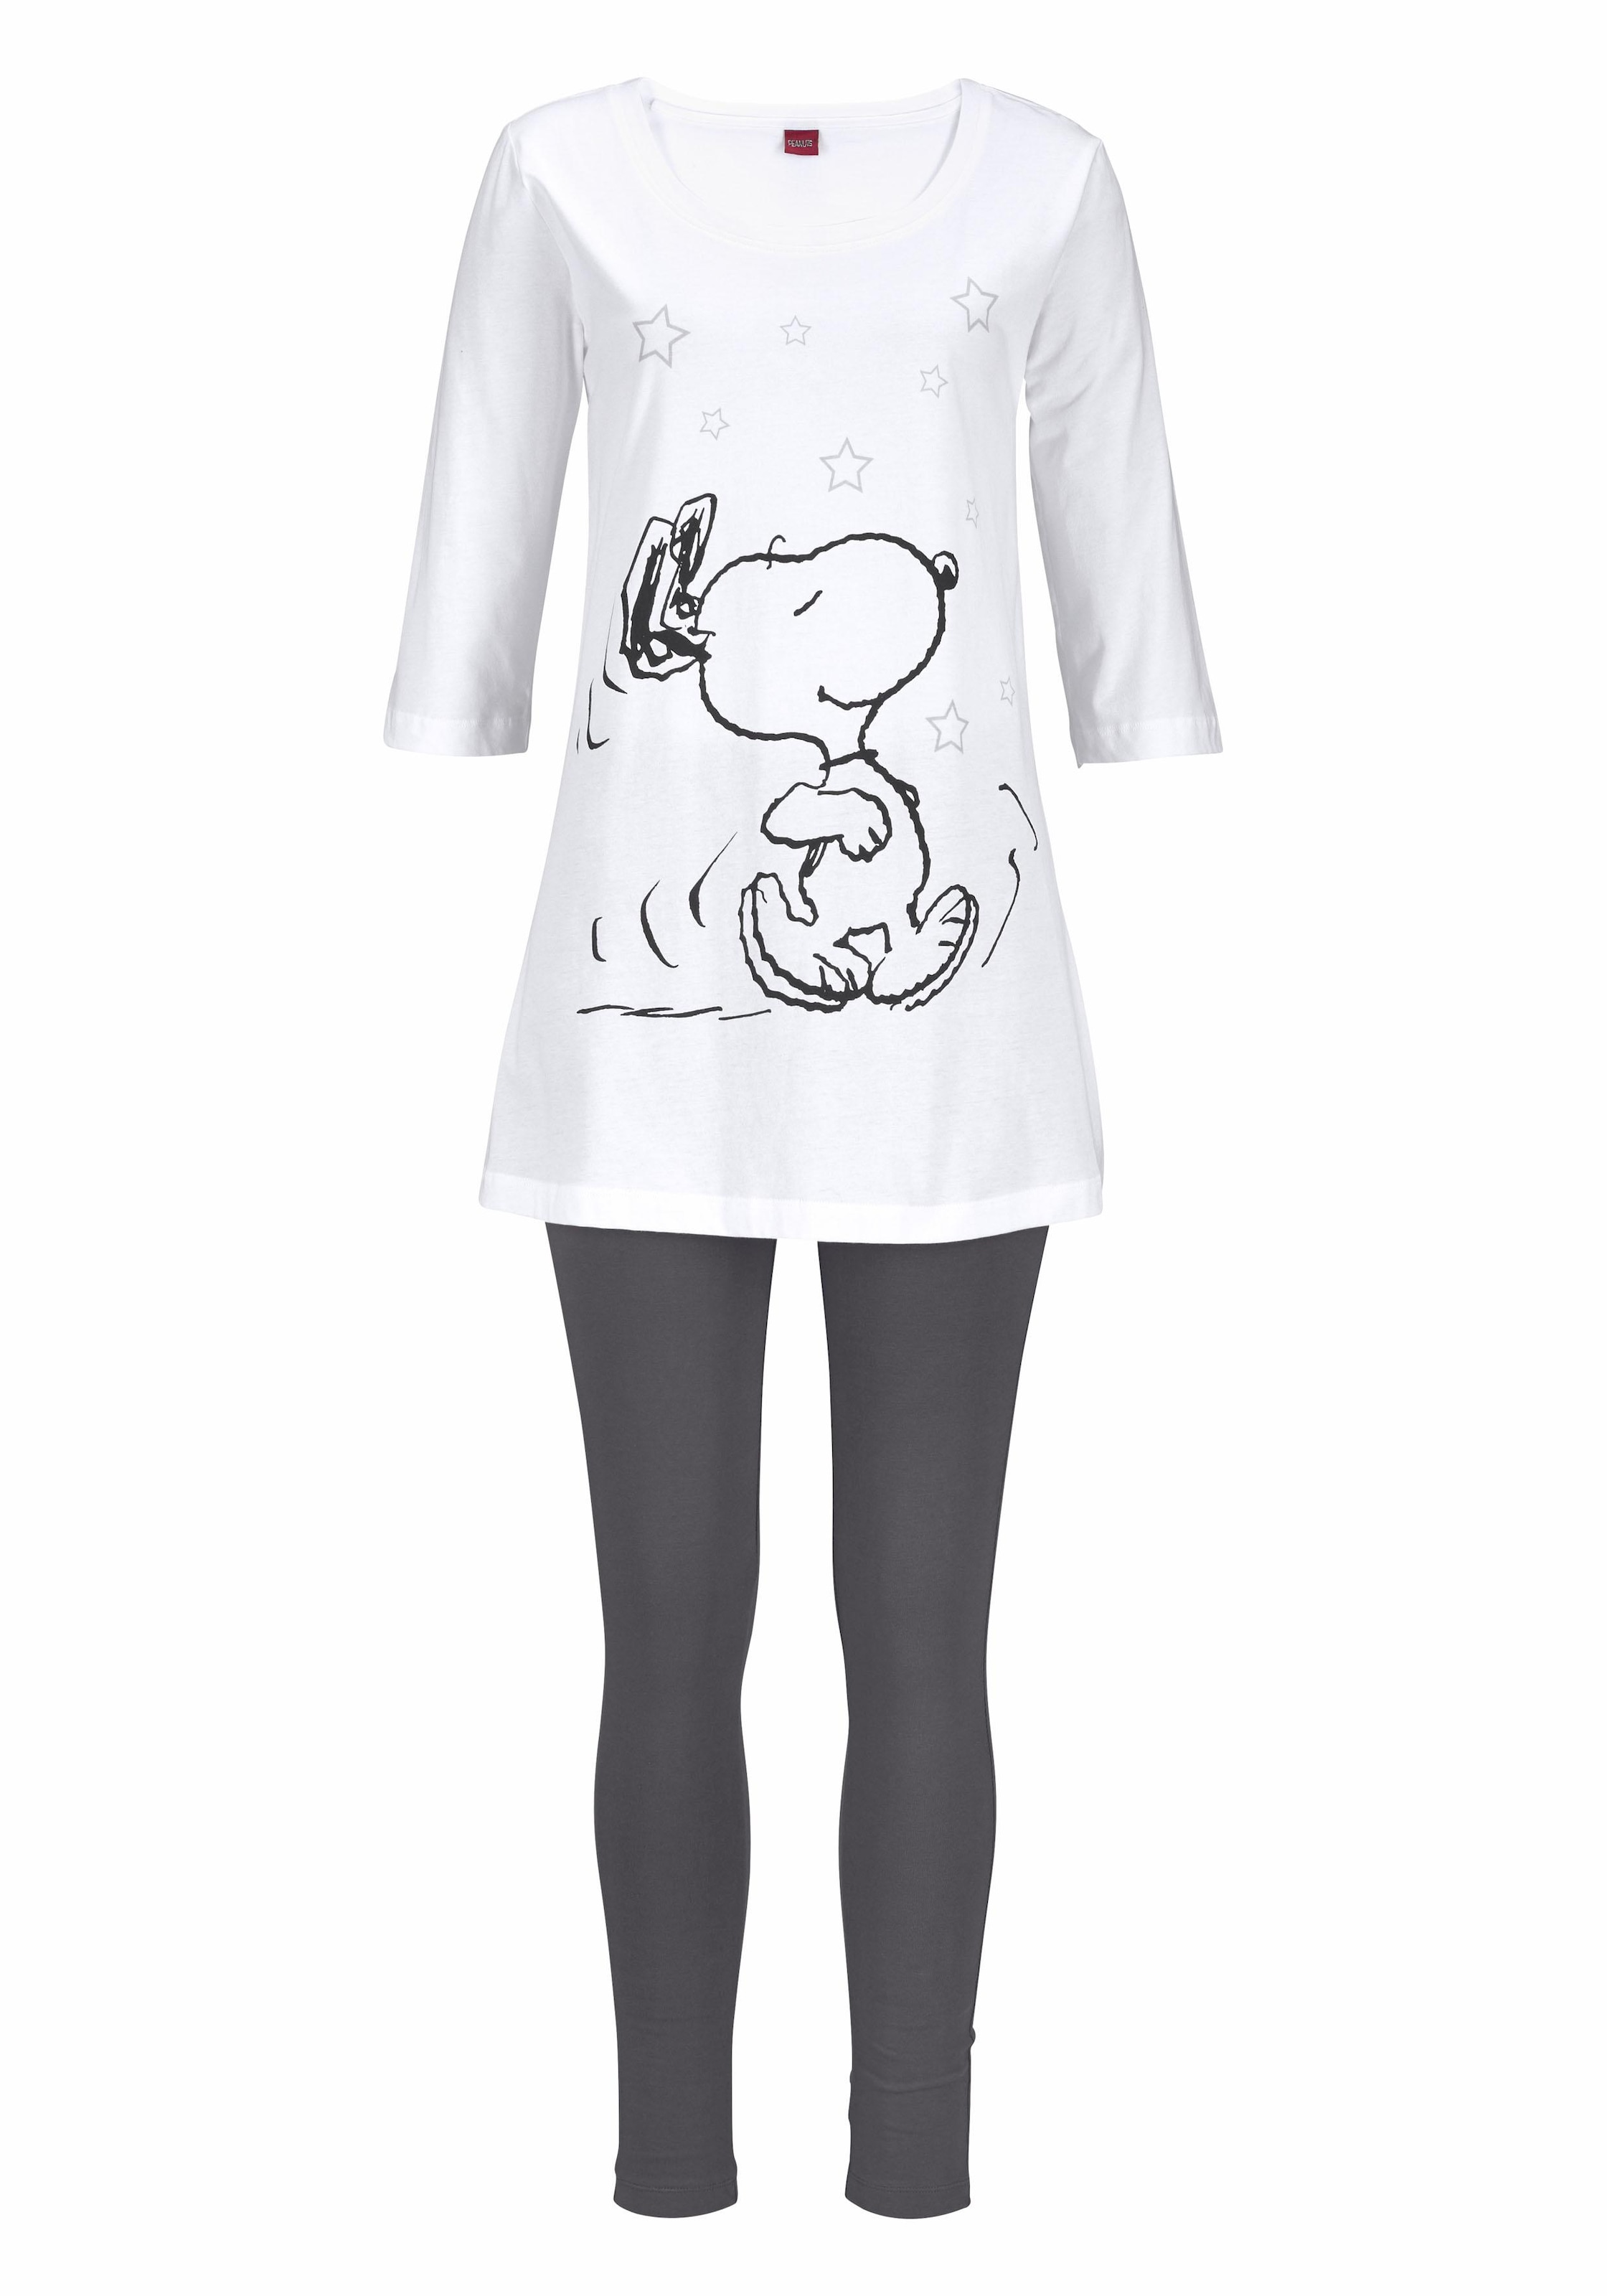 Peanuts Pyjama, (2 tlg.), mit Leggings und legerem Shirt mit Snoopy Druck